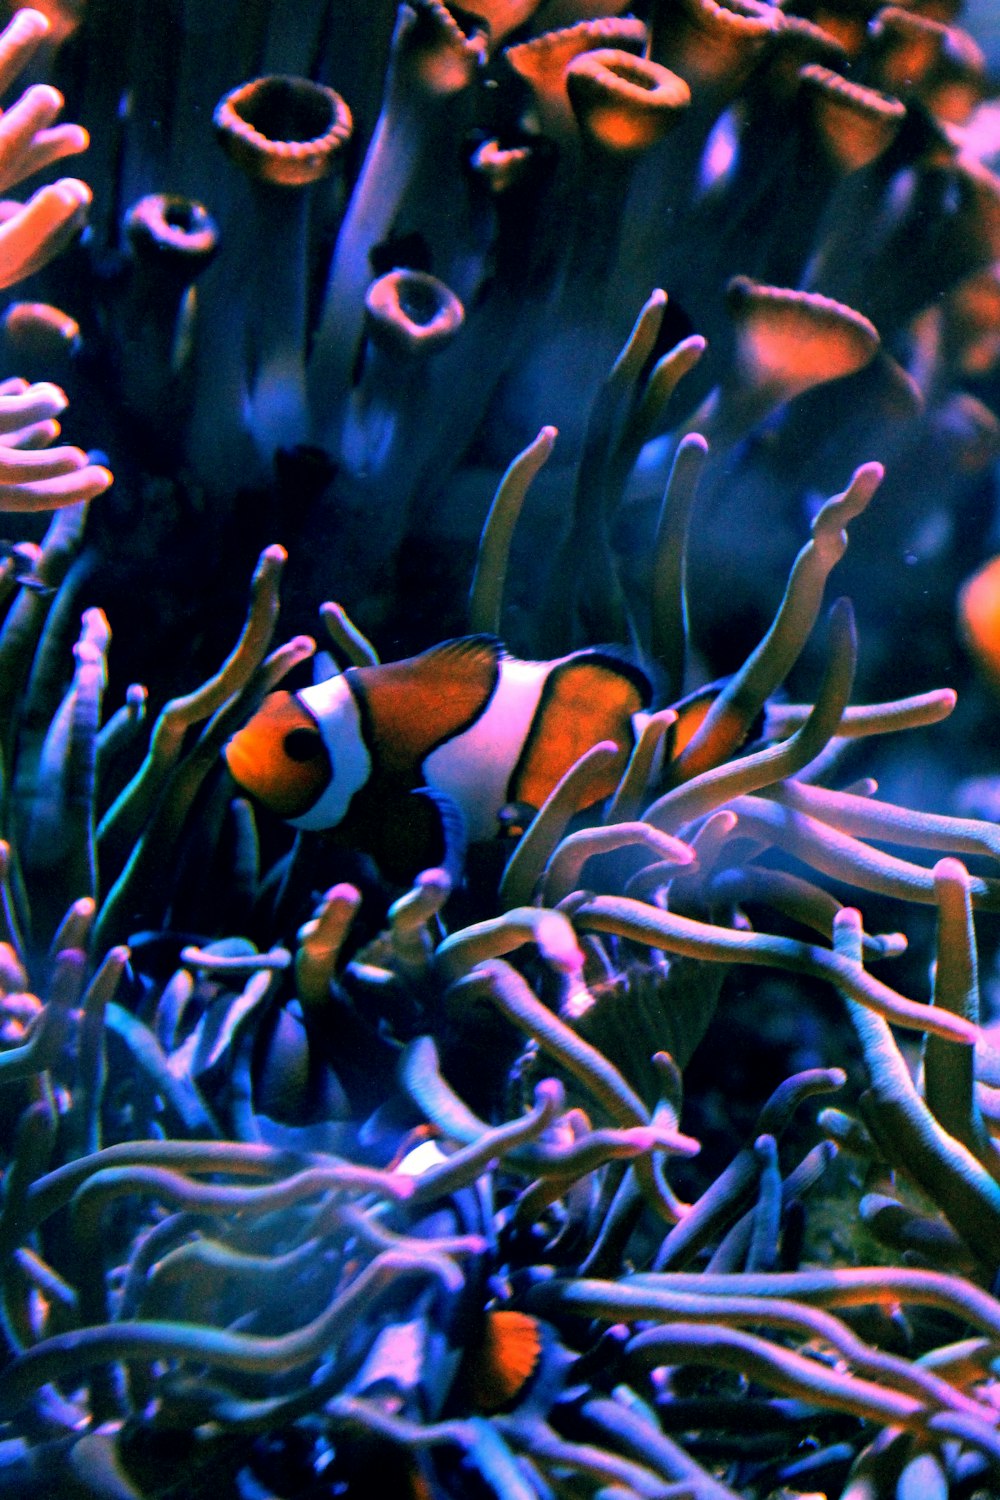 an orange and white clown fish in an aquarium